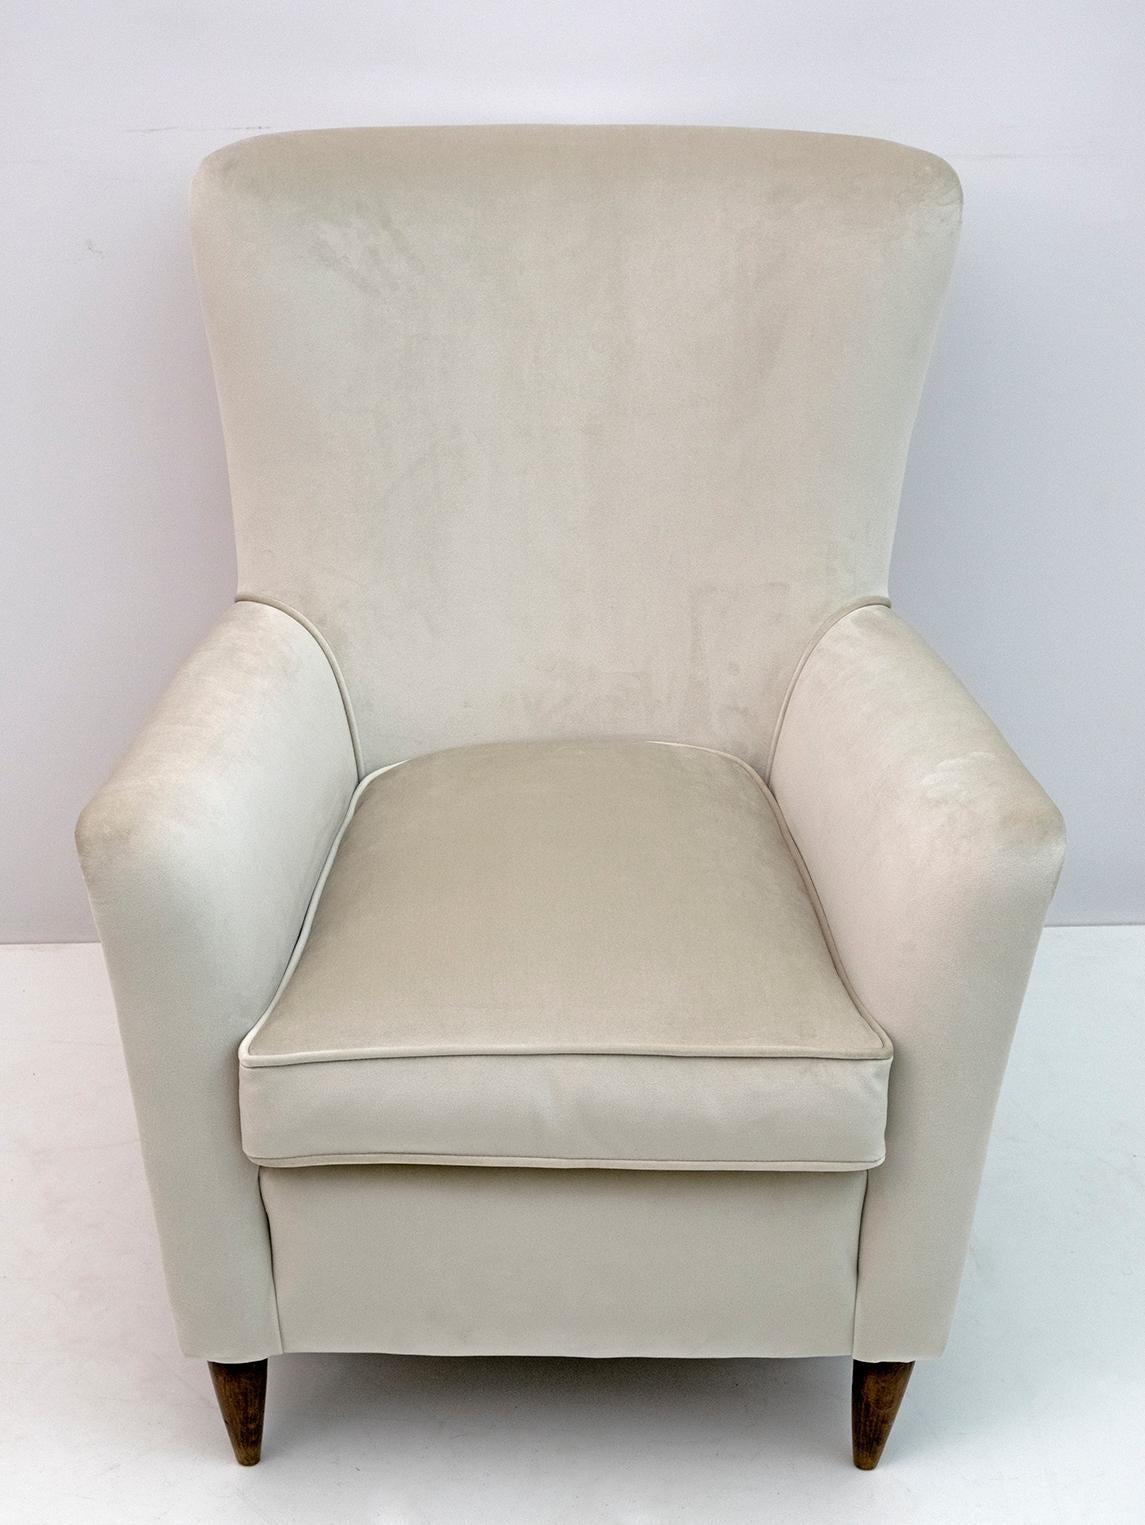 Mid-20th Century Gio Ponti Mid-Century Modern Italian Velvet Armchair for Isa, 1950s